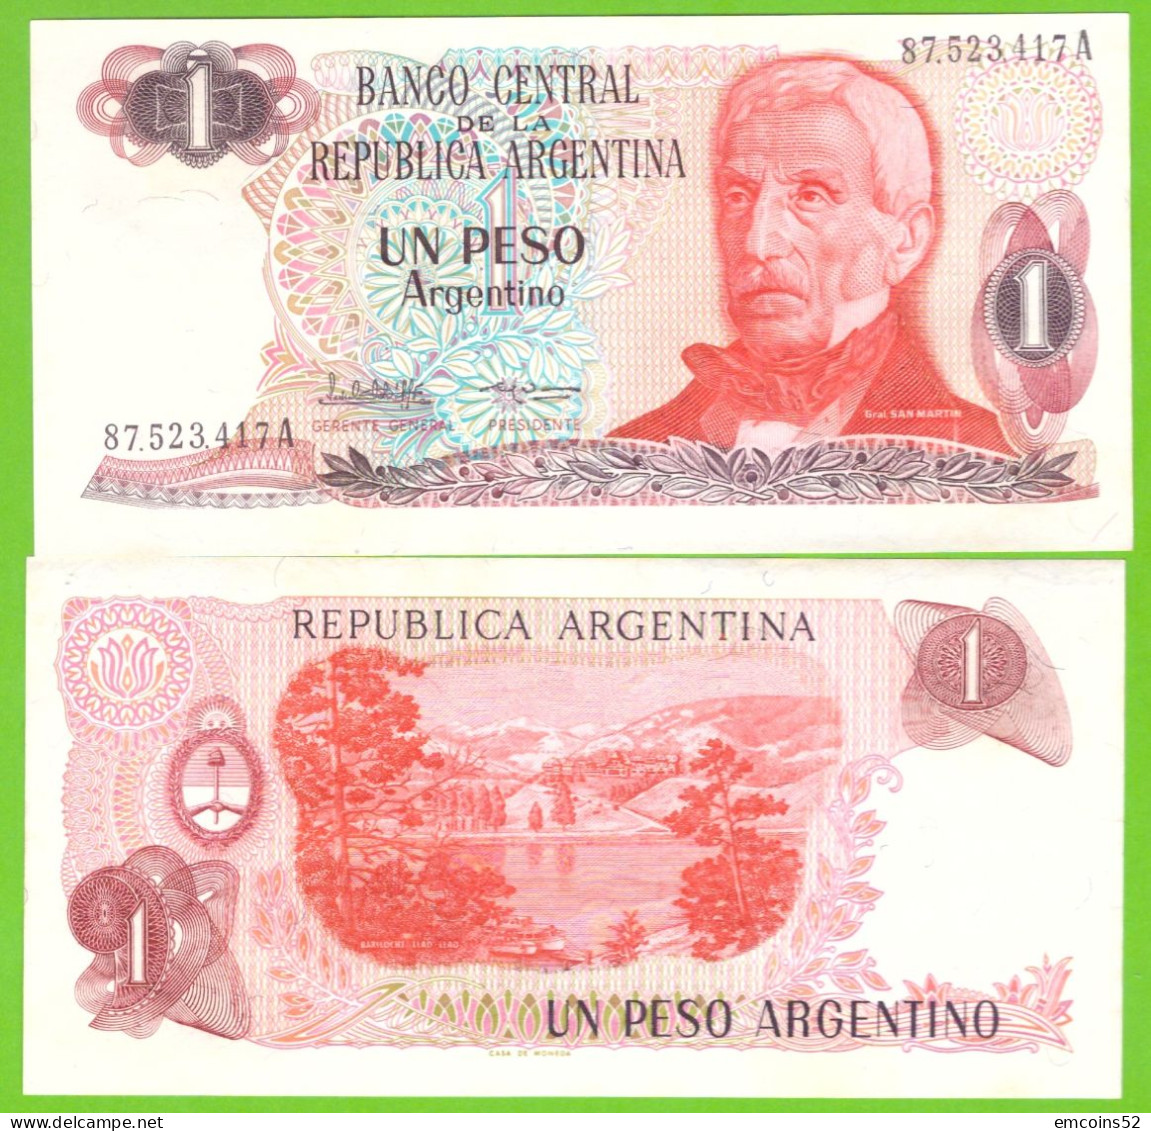 ARGENTINA 1 PESO 1983/1984 P-311a(2)  UNC - Argentine